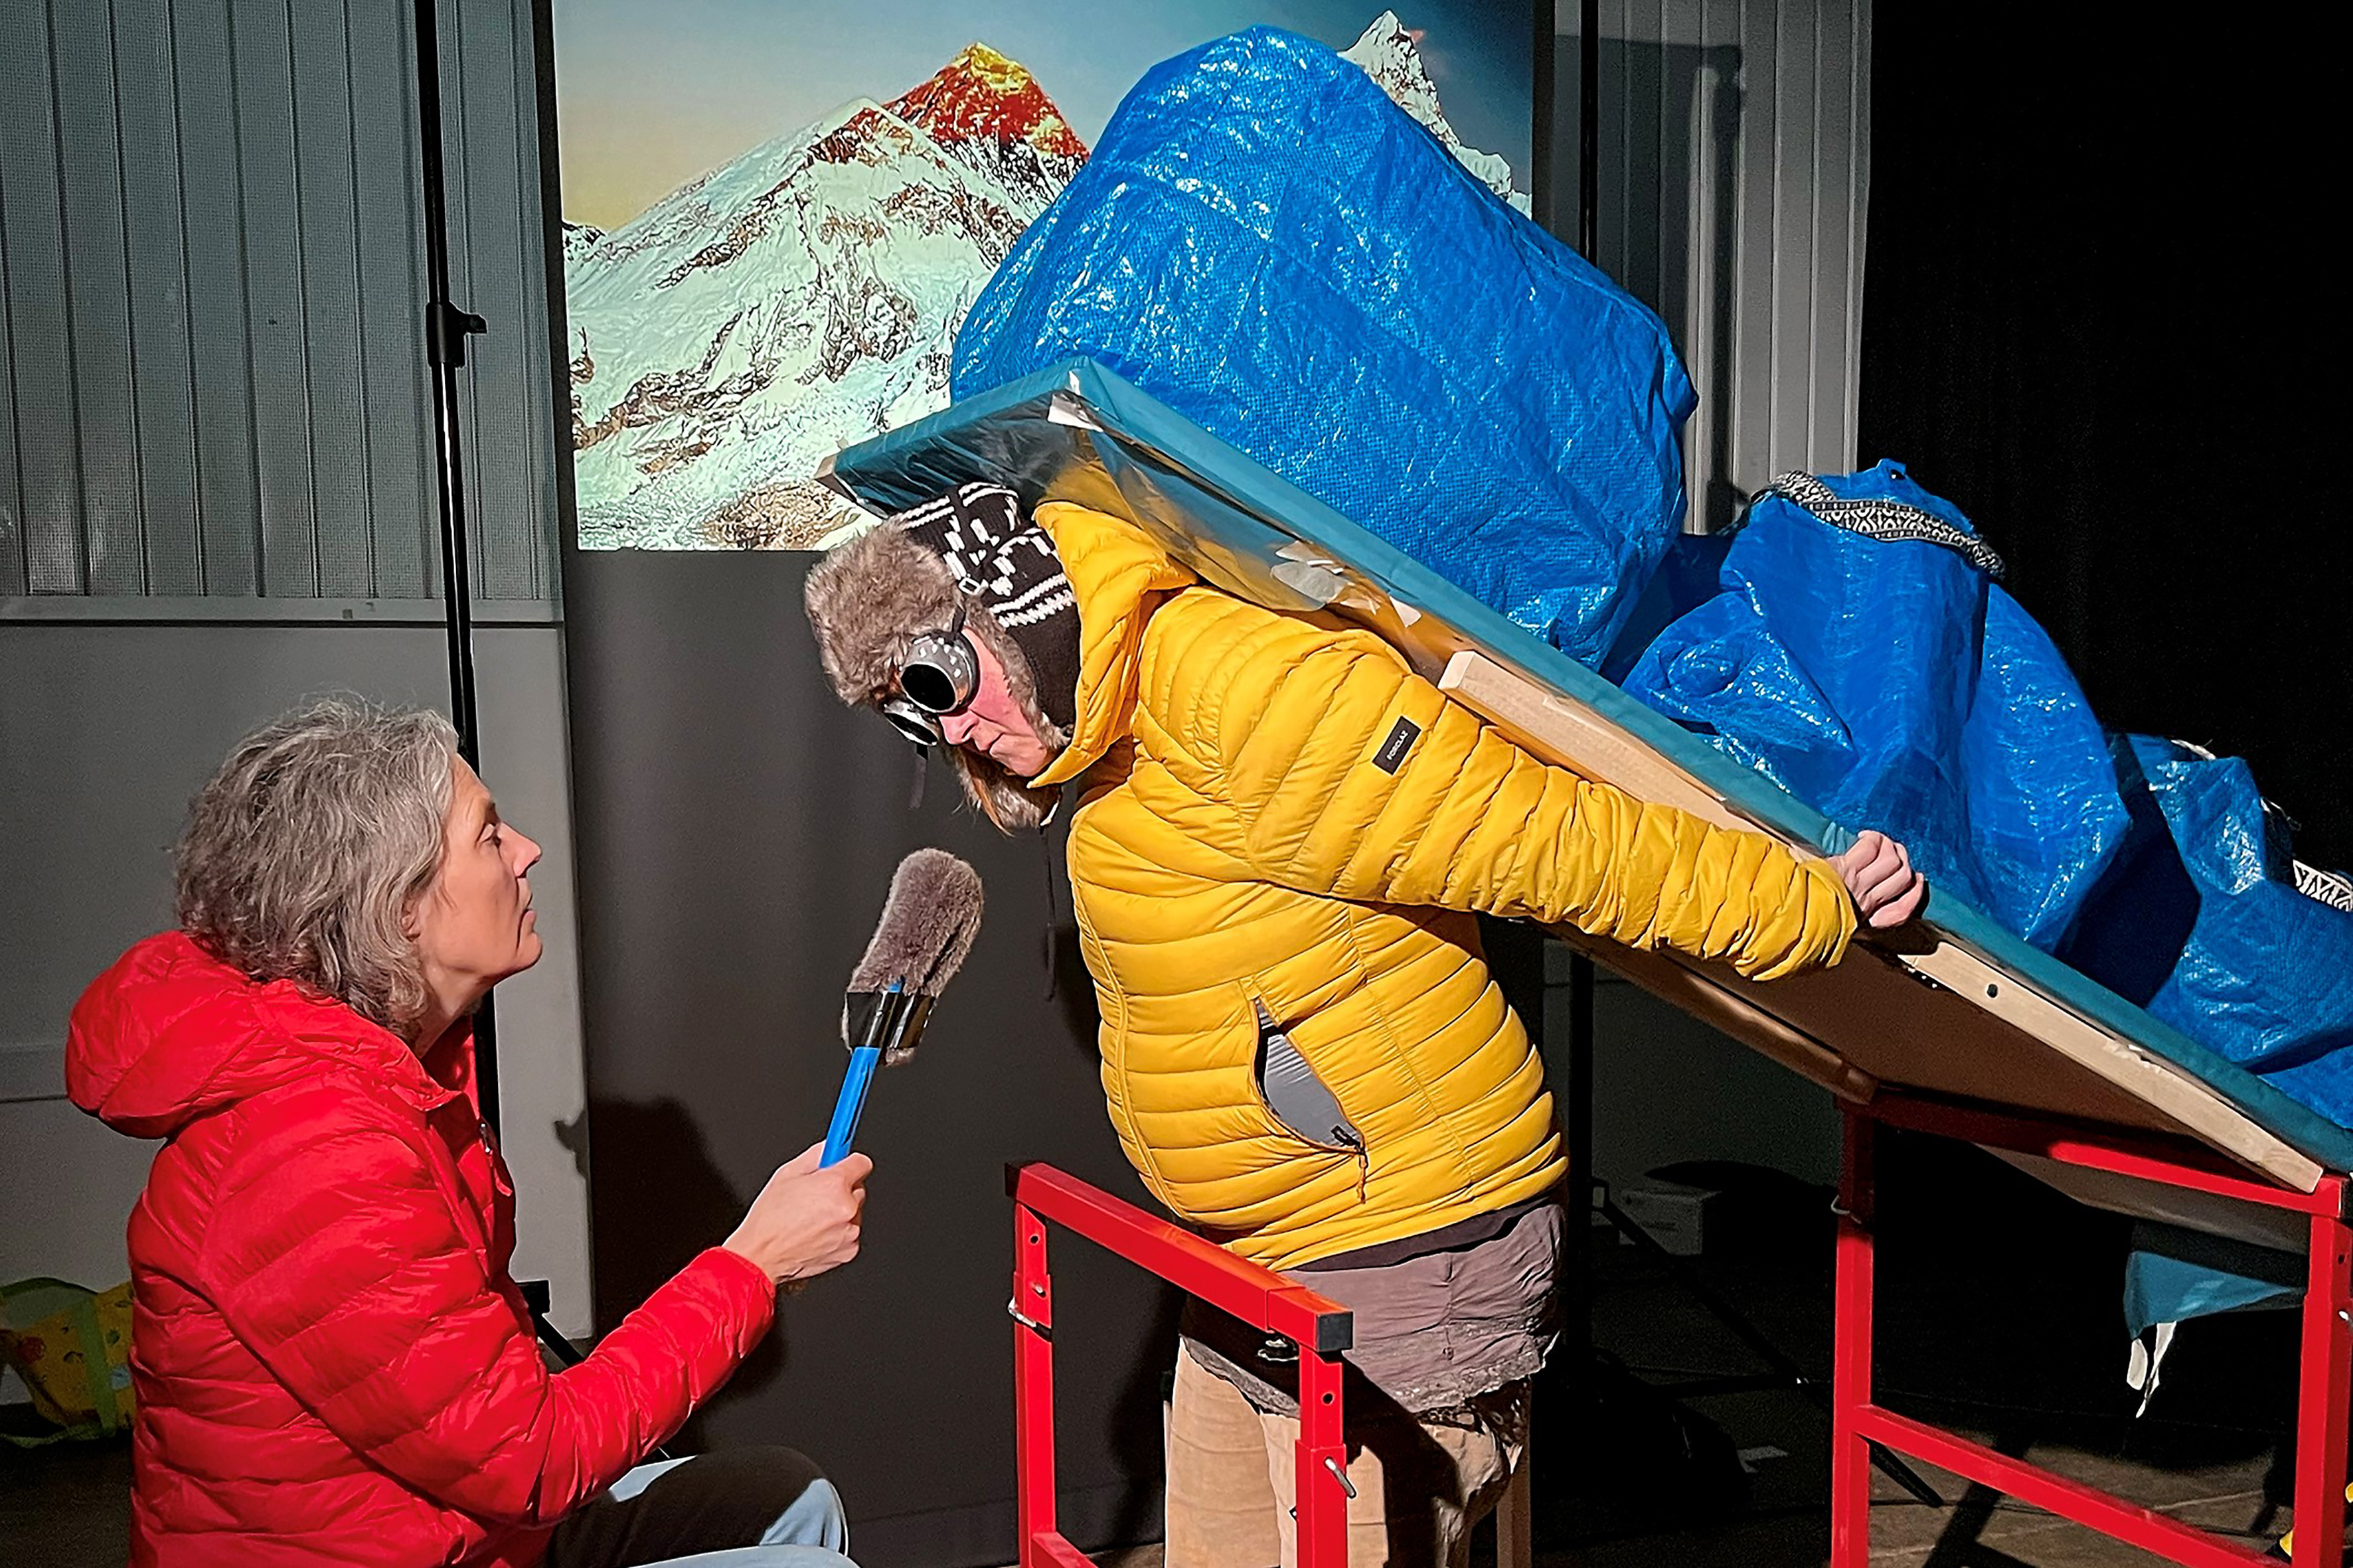 Puppenspielerin Eva Kaufmann interviewt die schwer bepackte Alexandra Kaufmann in dicken Winterklamotten. Im Hintergrund ist ein Bild des Mount Everest.